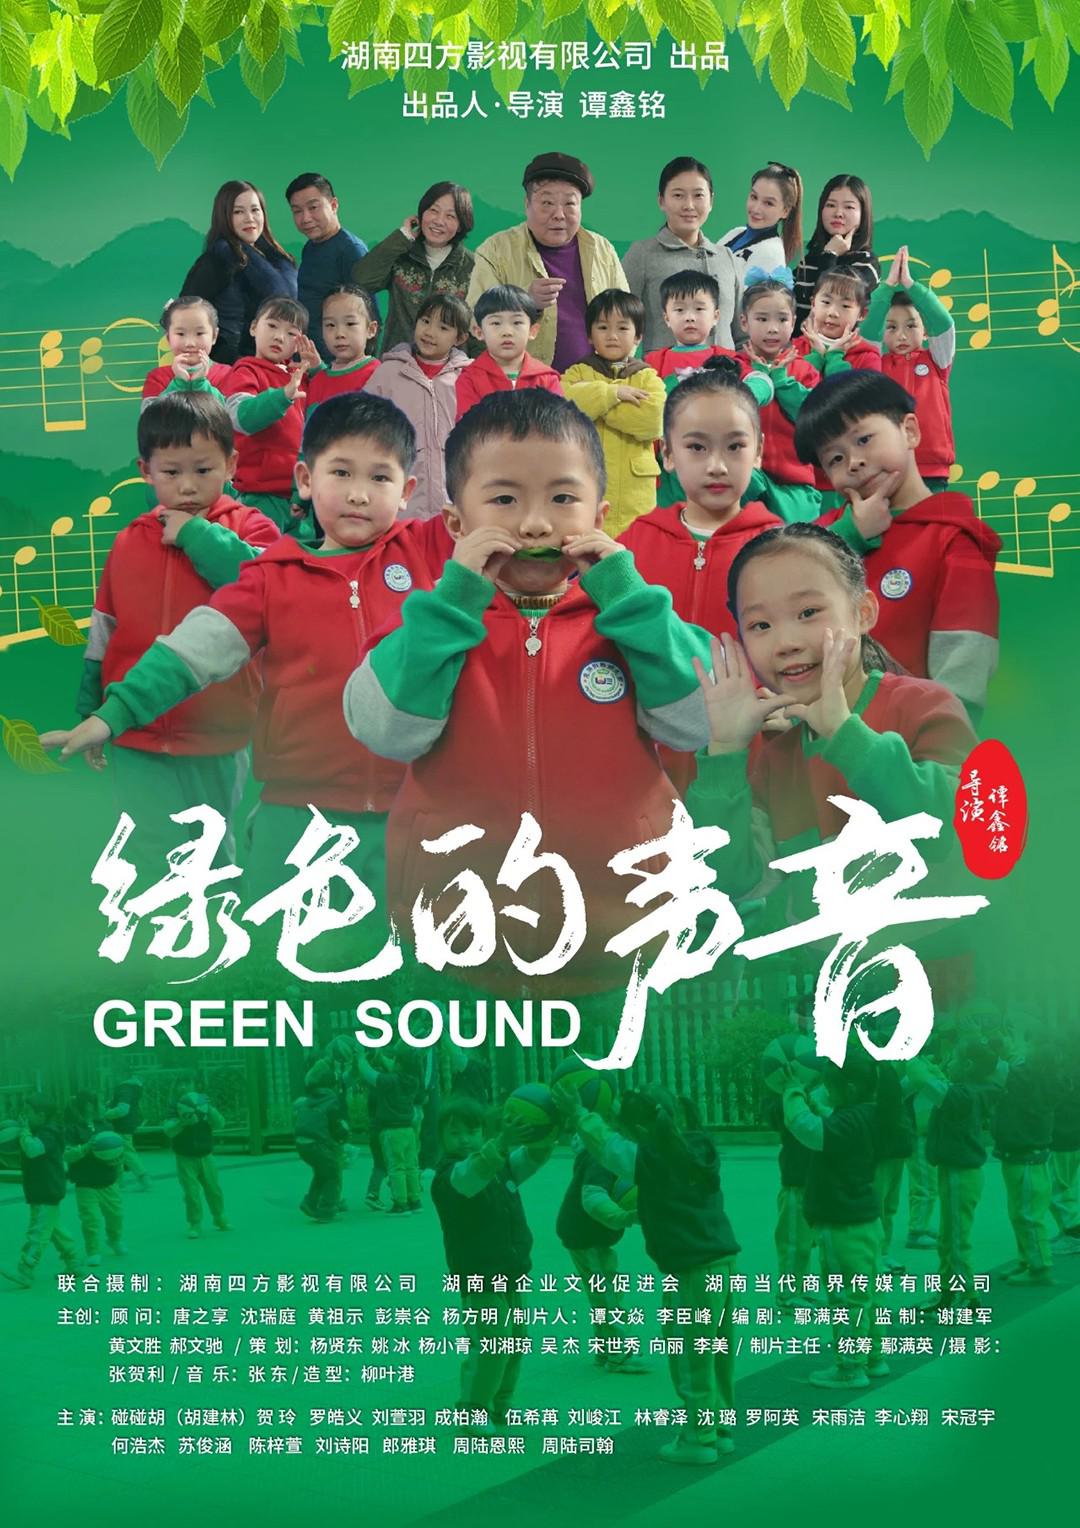 绿色的声音 - Green Sound